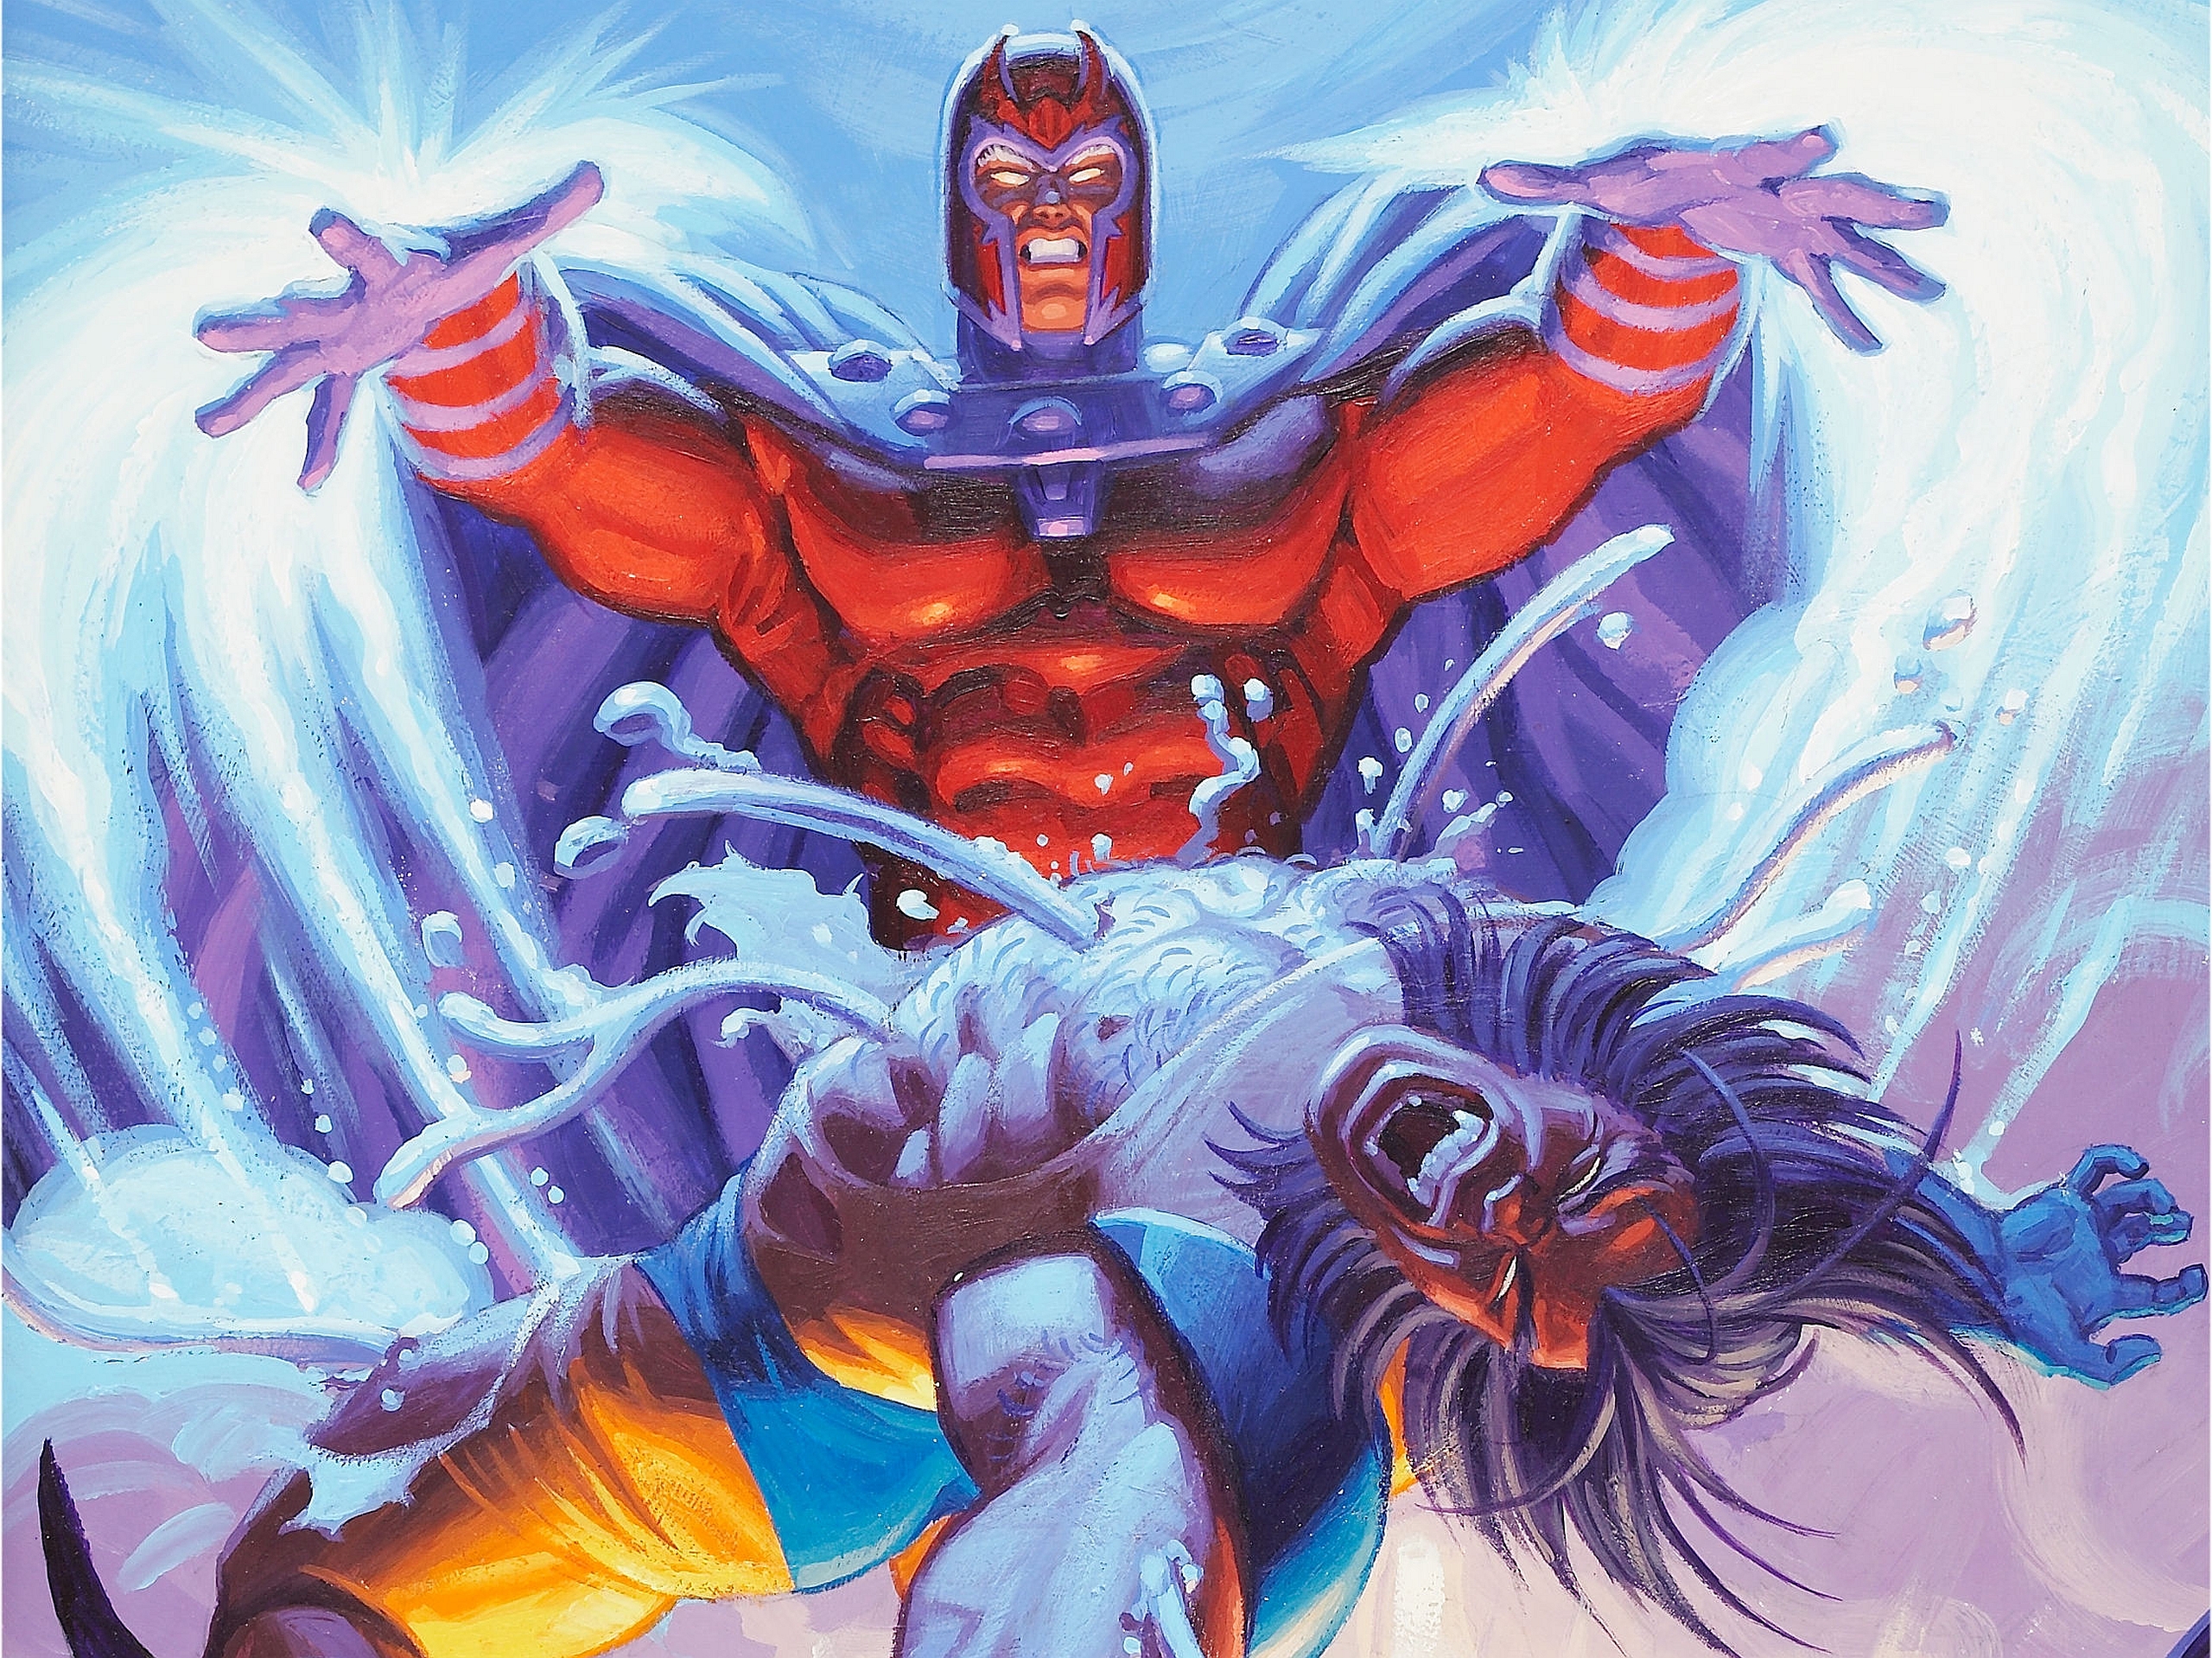 Depois de sua luta contra Magnuse ele obter todo o metal de seu equeleto, como Wolverine conseguiu seu Adamantium de volta depois que Magneto o removeu?